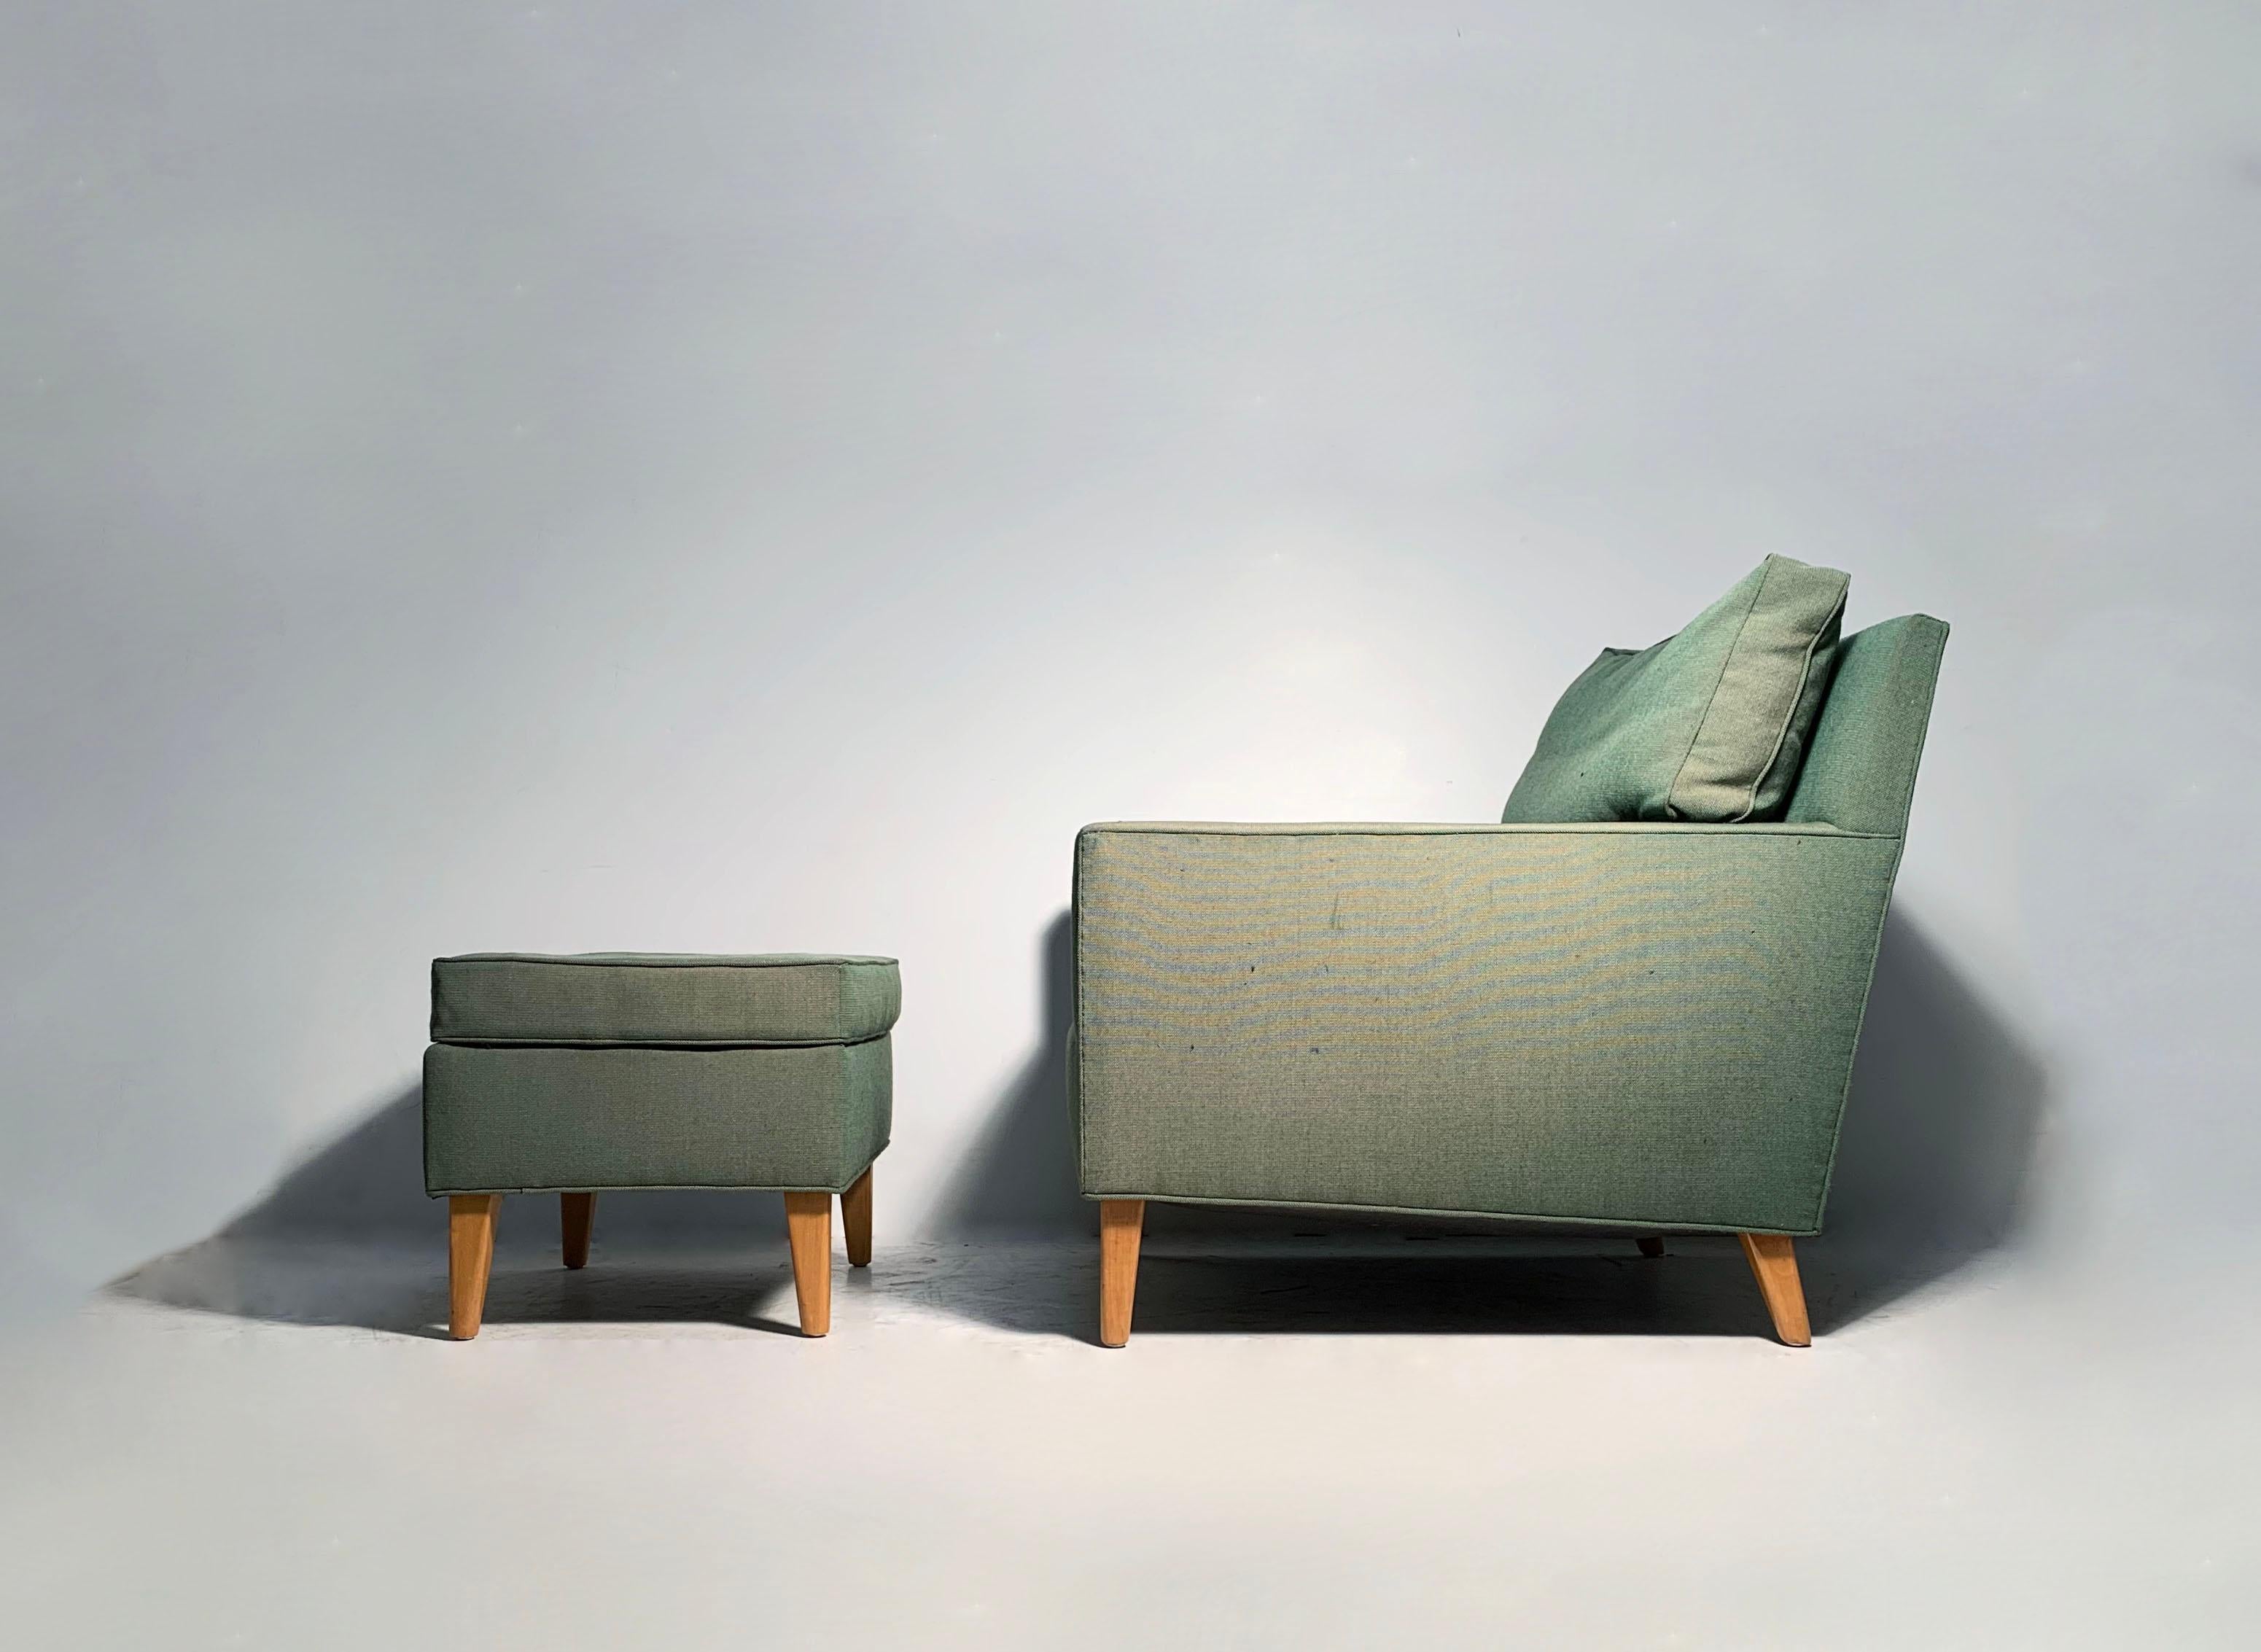 Vintage Modern Lounge Chair & Ottoman.

Ein Lounge Chair mit gutem Design und schönen Proportionen, der entweder nach Maß gefertigt oder von Watson & Boaler für einen Nachlass spezifiziert wurde.  Watson & Boaler war im 20. Jahrhundert ein